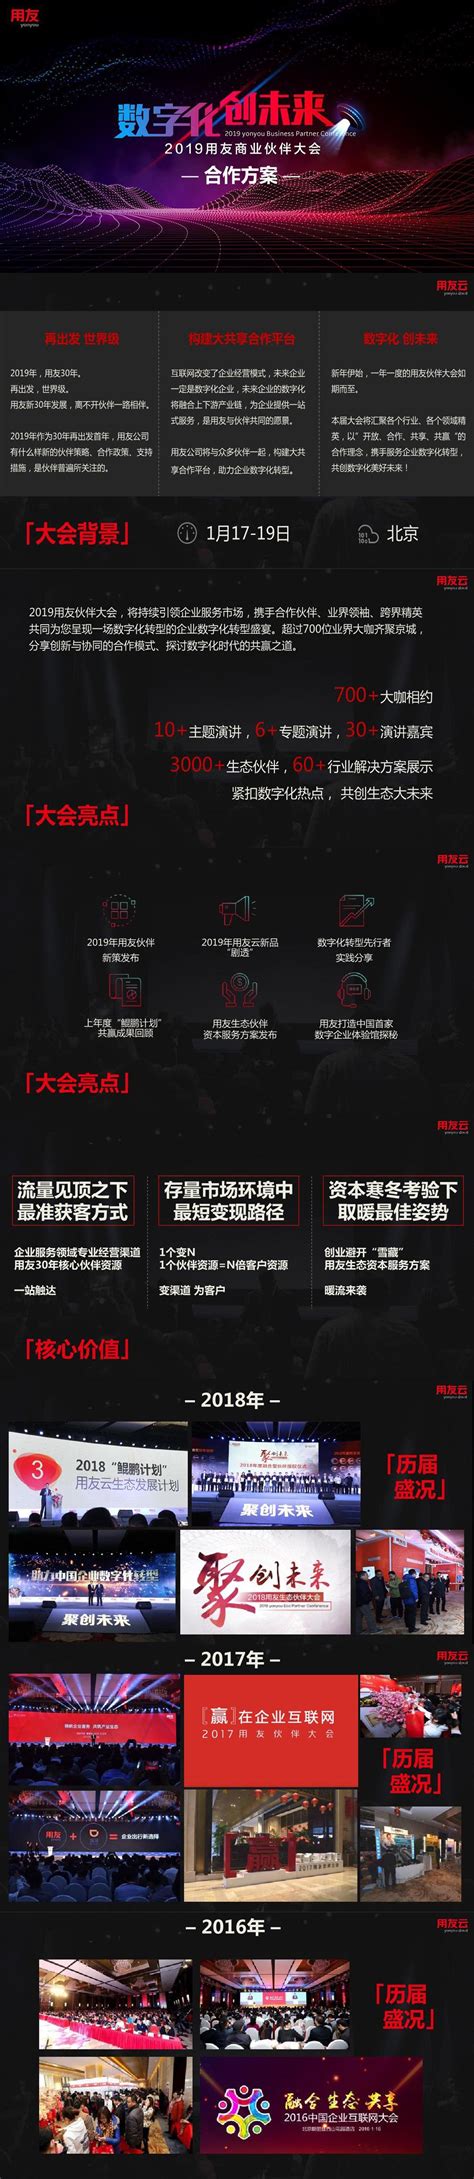 2021山东综艺频道广告价格-山东电视台-上海腾众广告有限公司